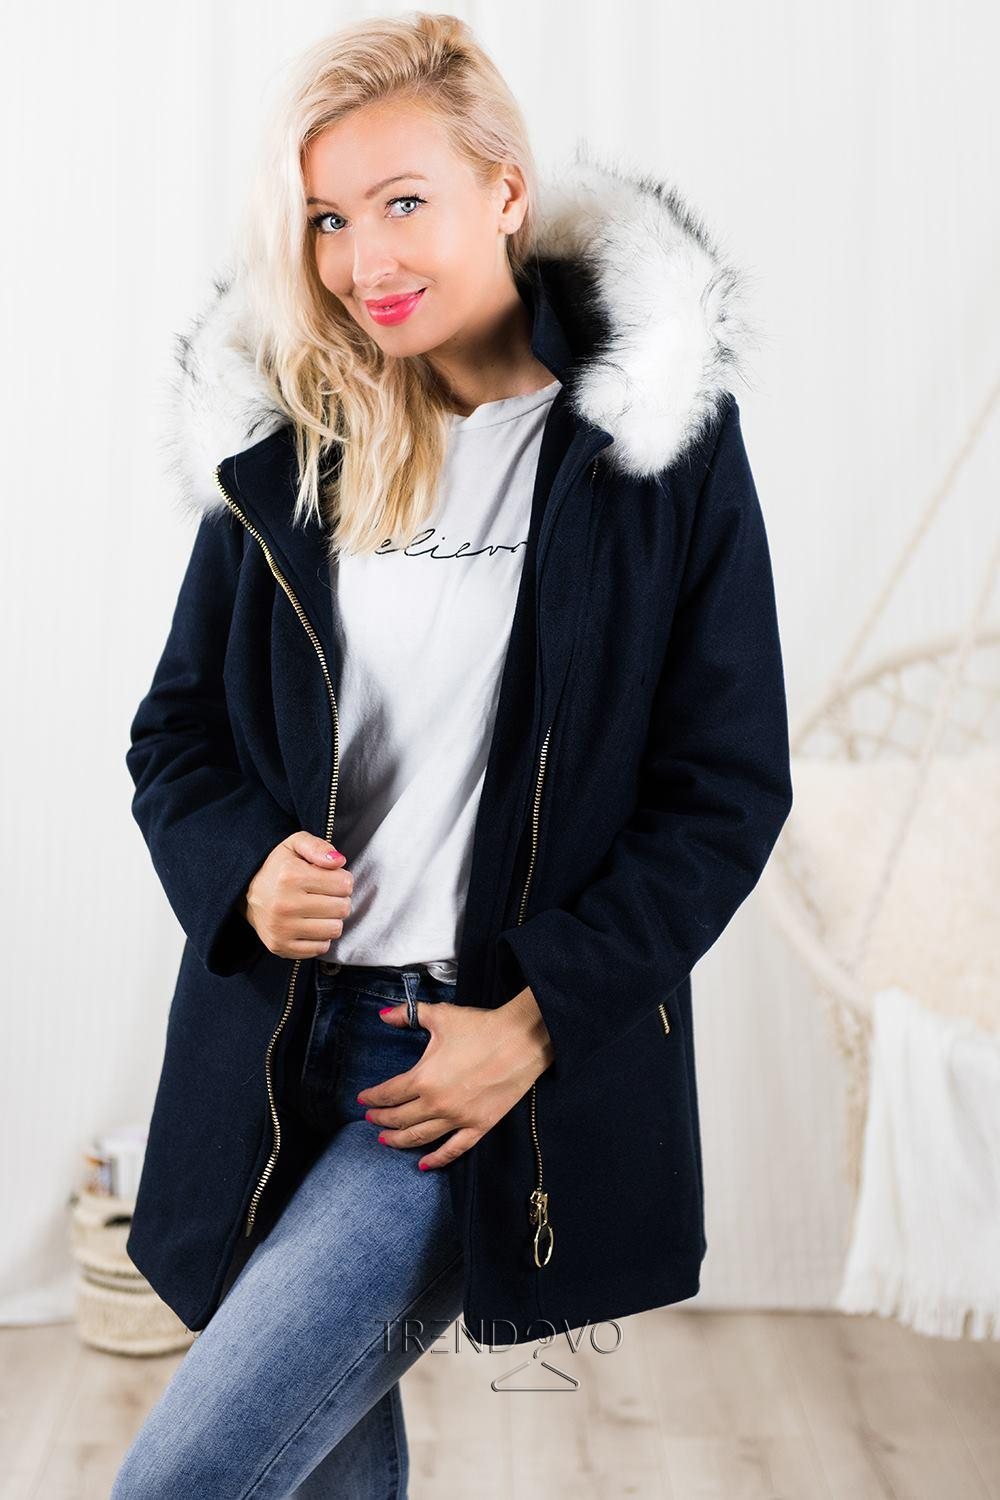 Tmavomodrý kabát s kapucňou